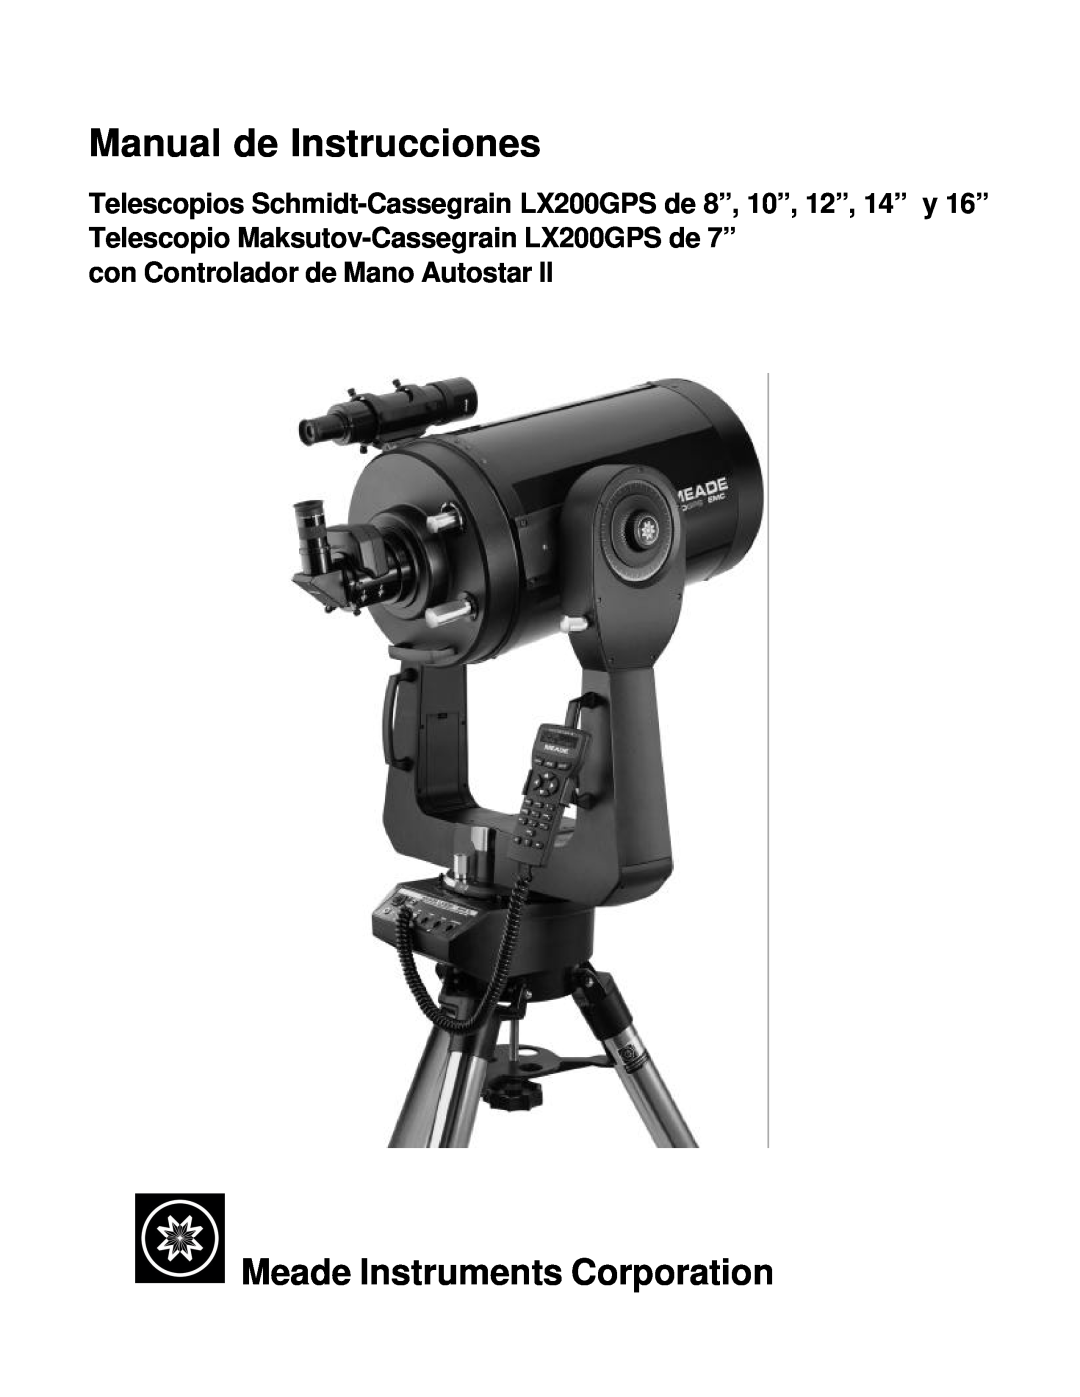 Meade LX200GPS manual Manual de Instrucciones, Meade Instruments Corporation, con Controlador de Mano Autostar 